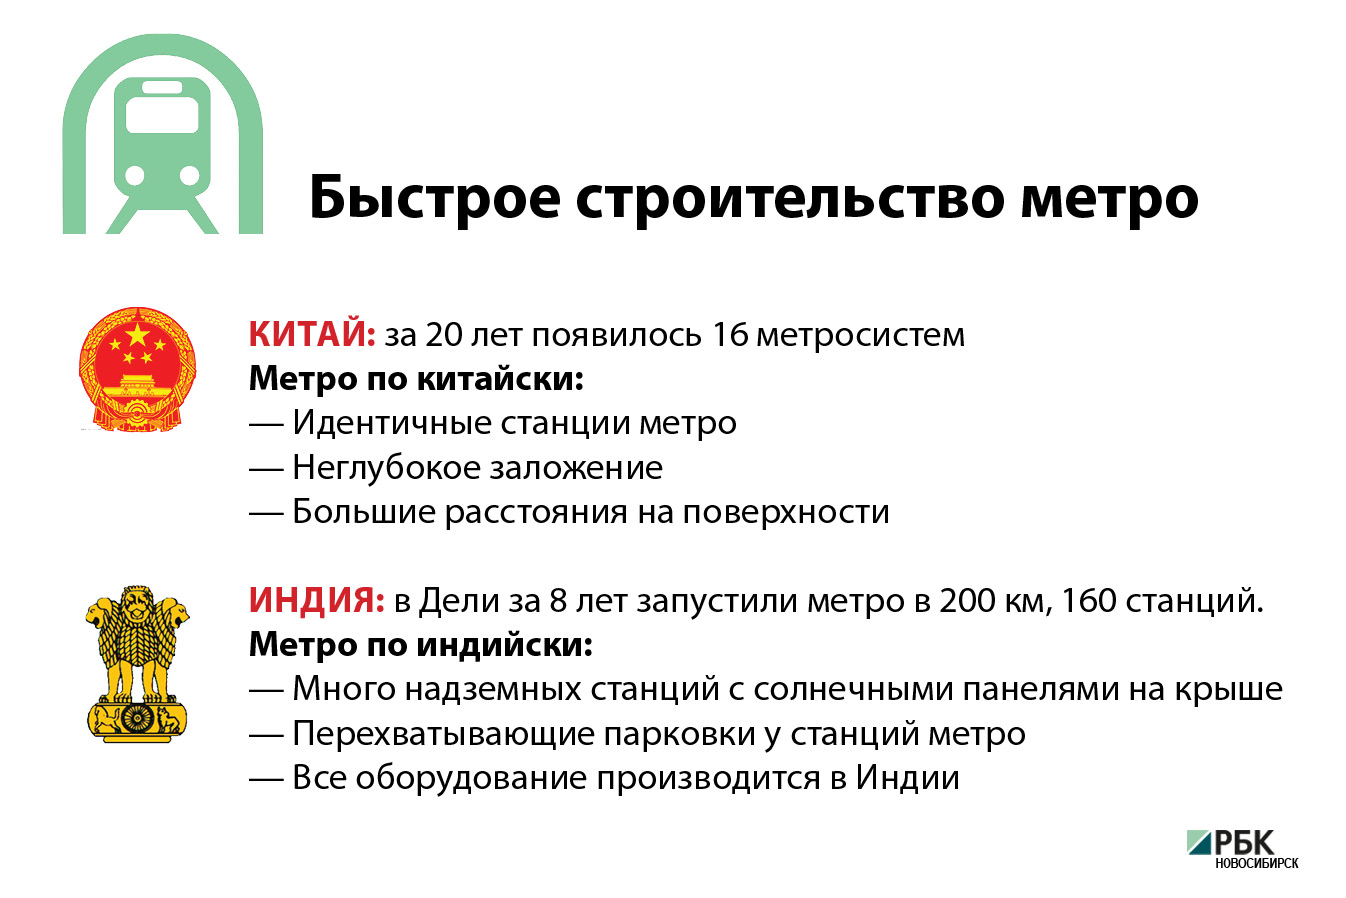 Цена вопроса: сколько стоит строительство новосибирского метро